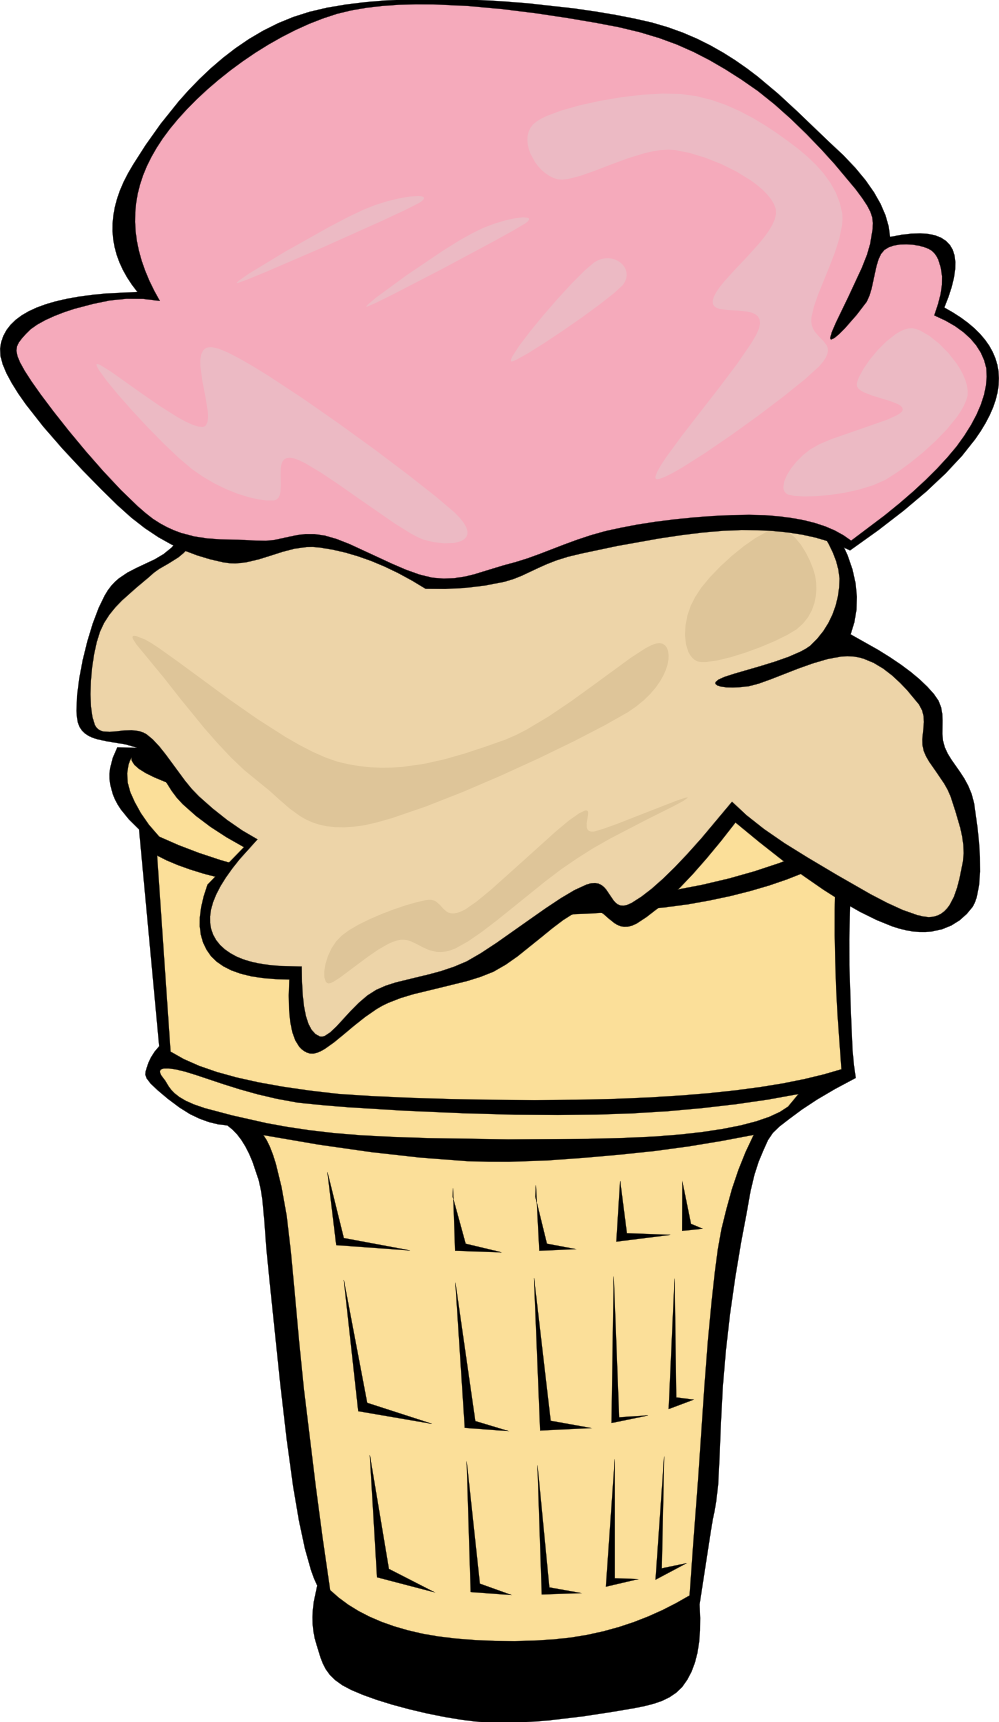 vanilla ice cream cone clipart - photo #47